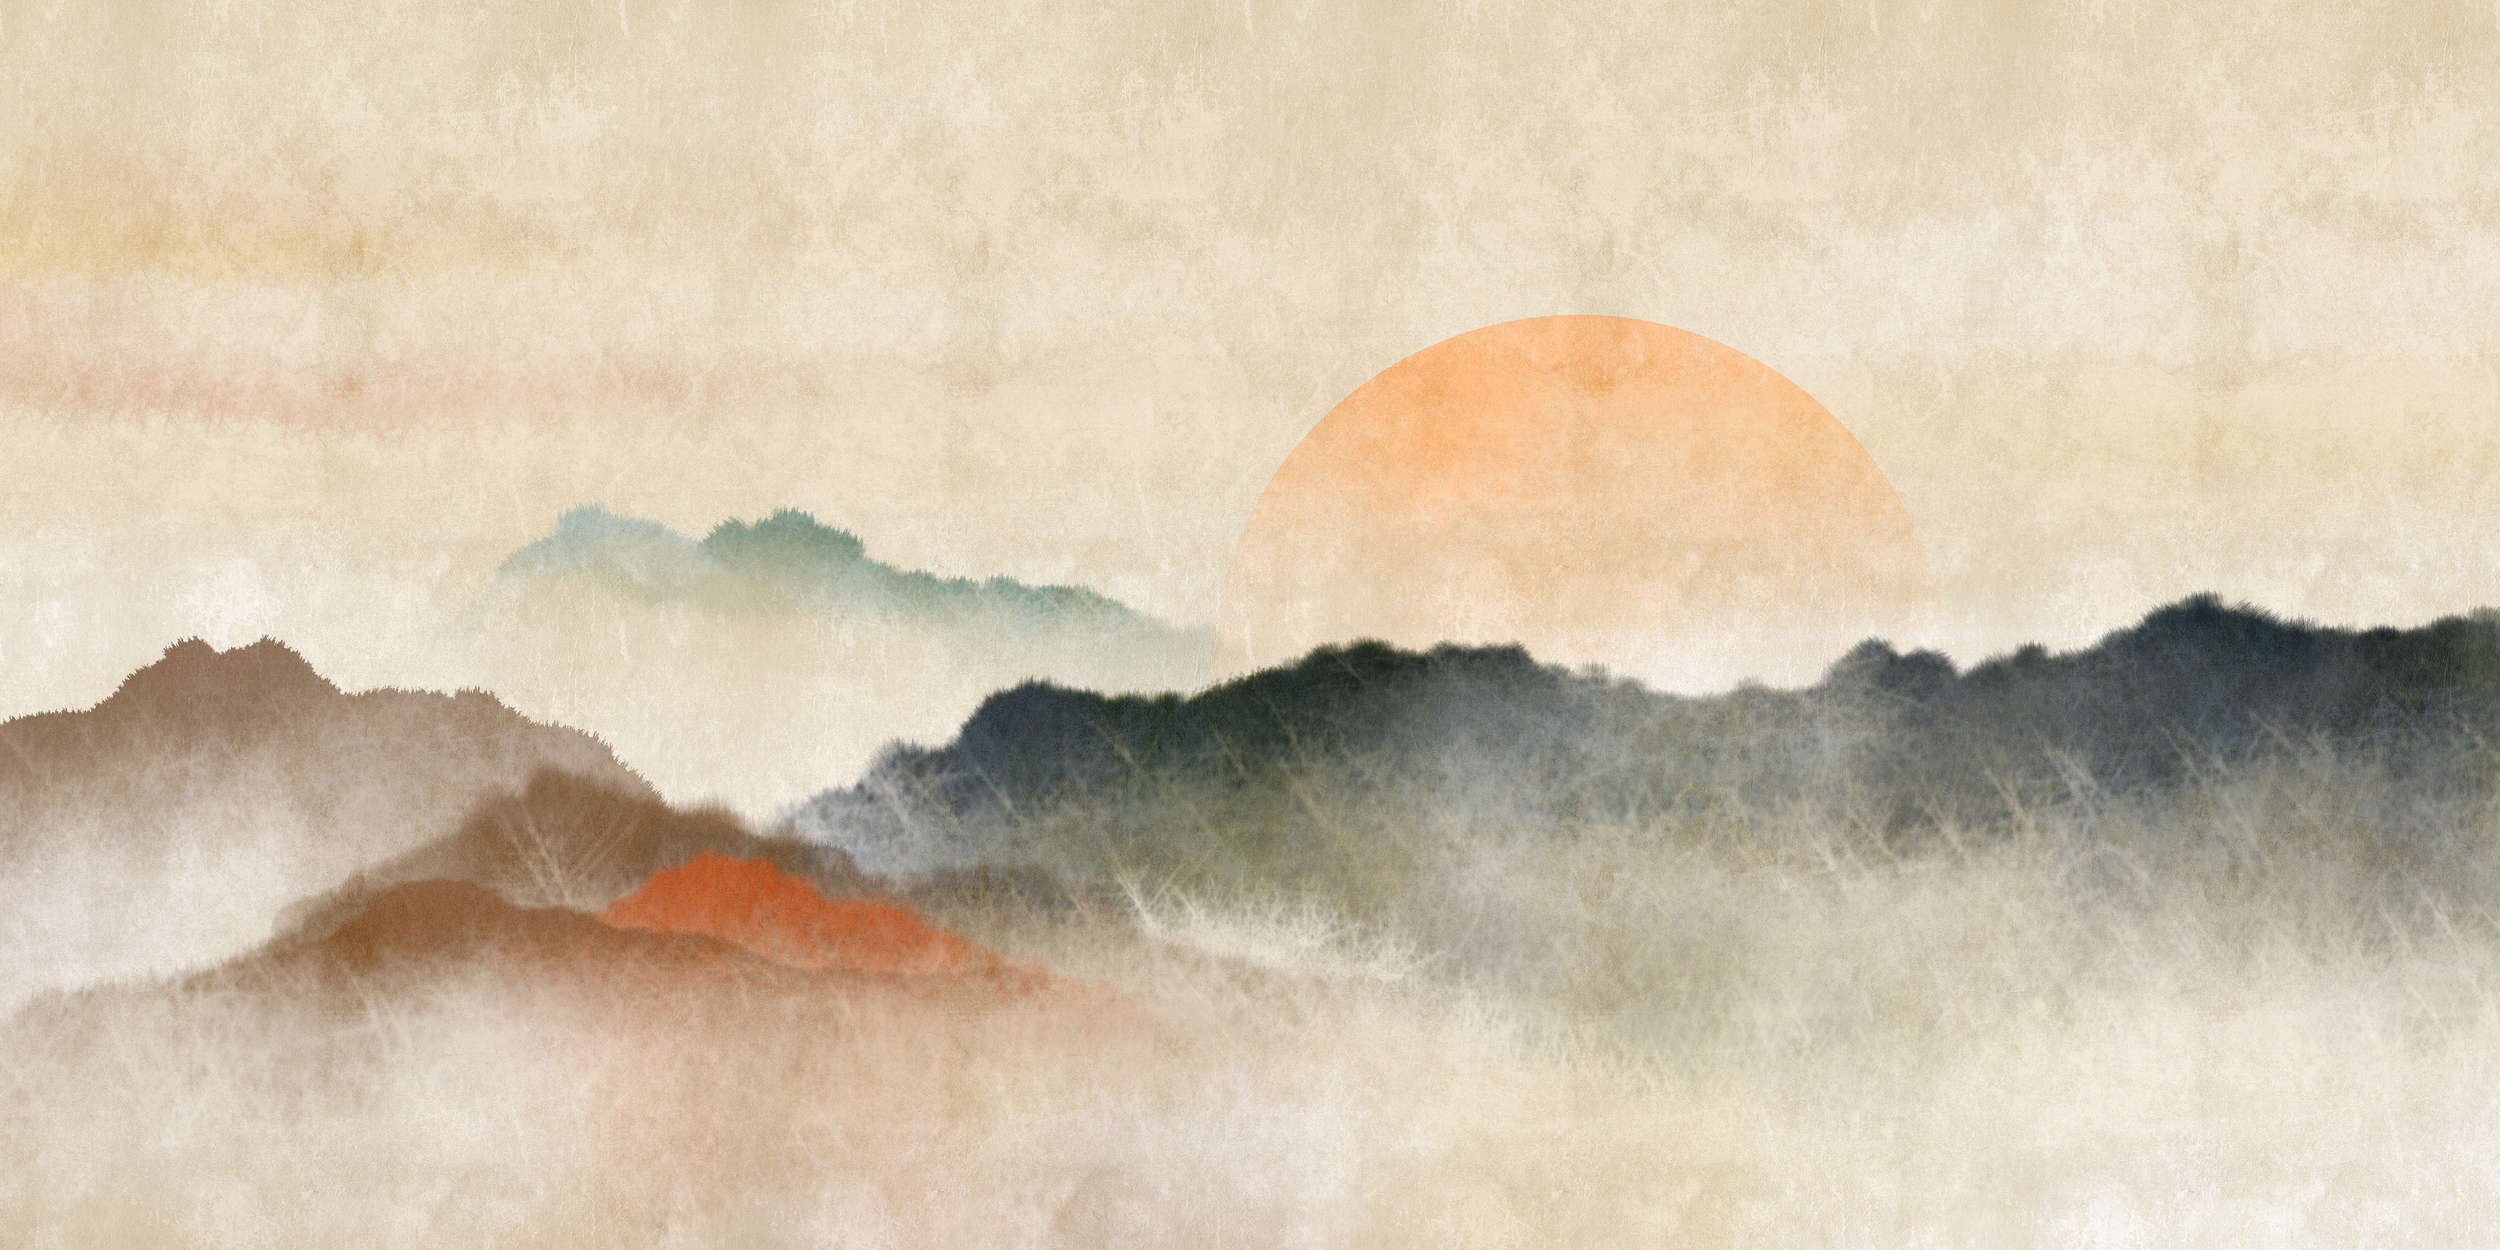             Akaishi 3 - Carta da parati Sunrise, stampa d'arte in stile asiatico
        